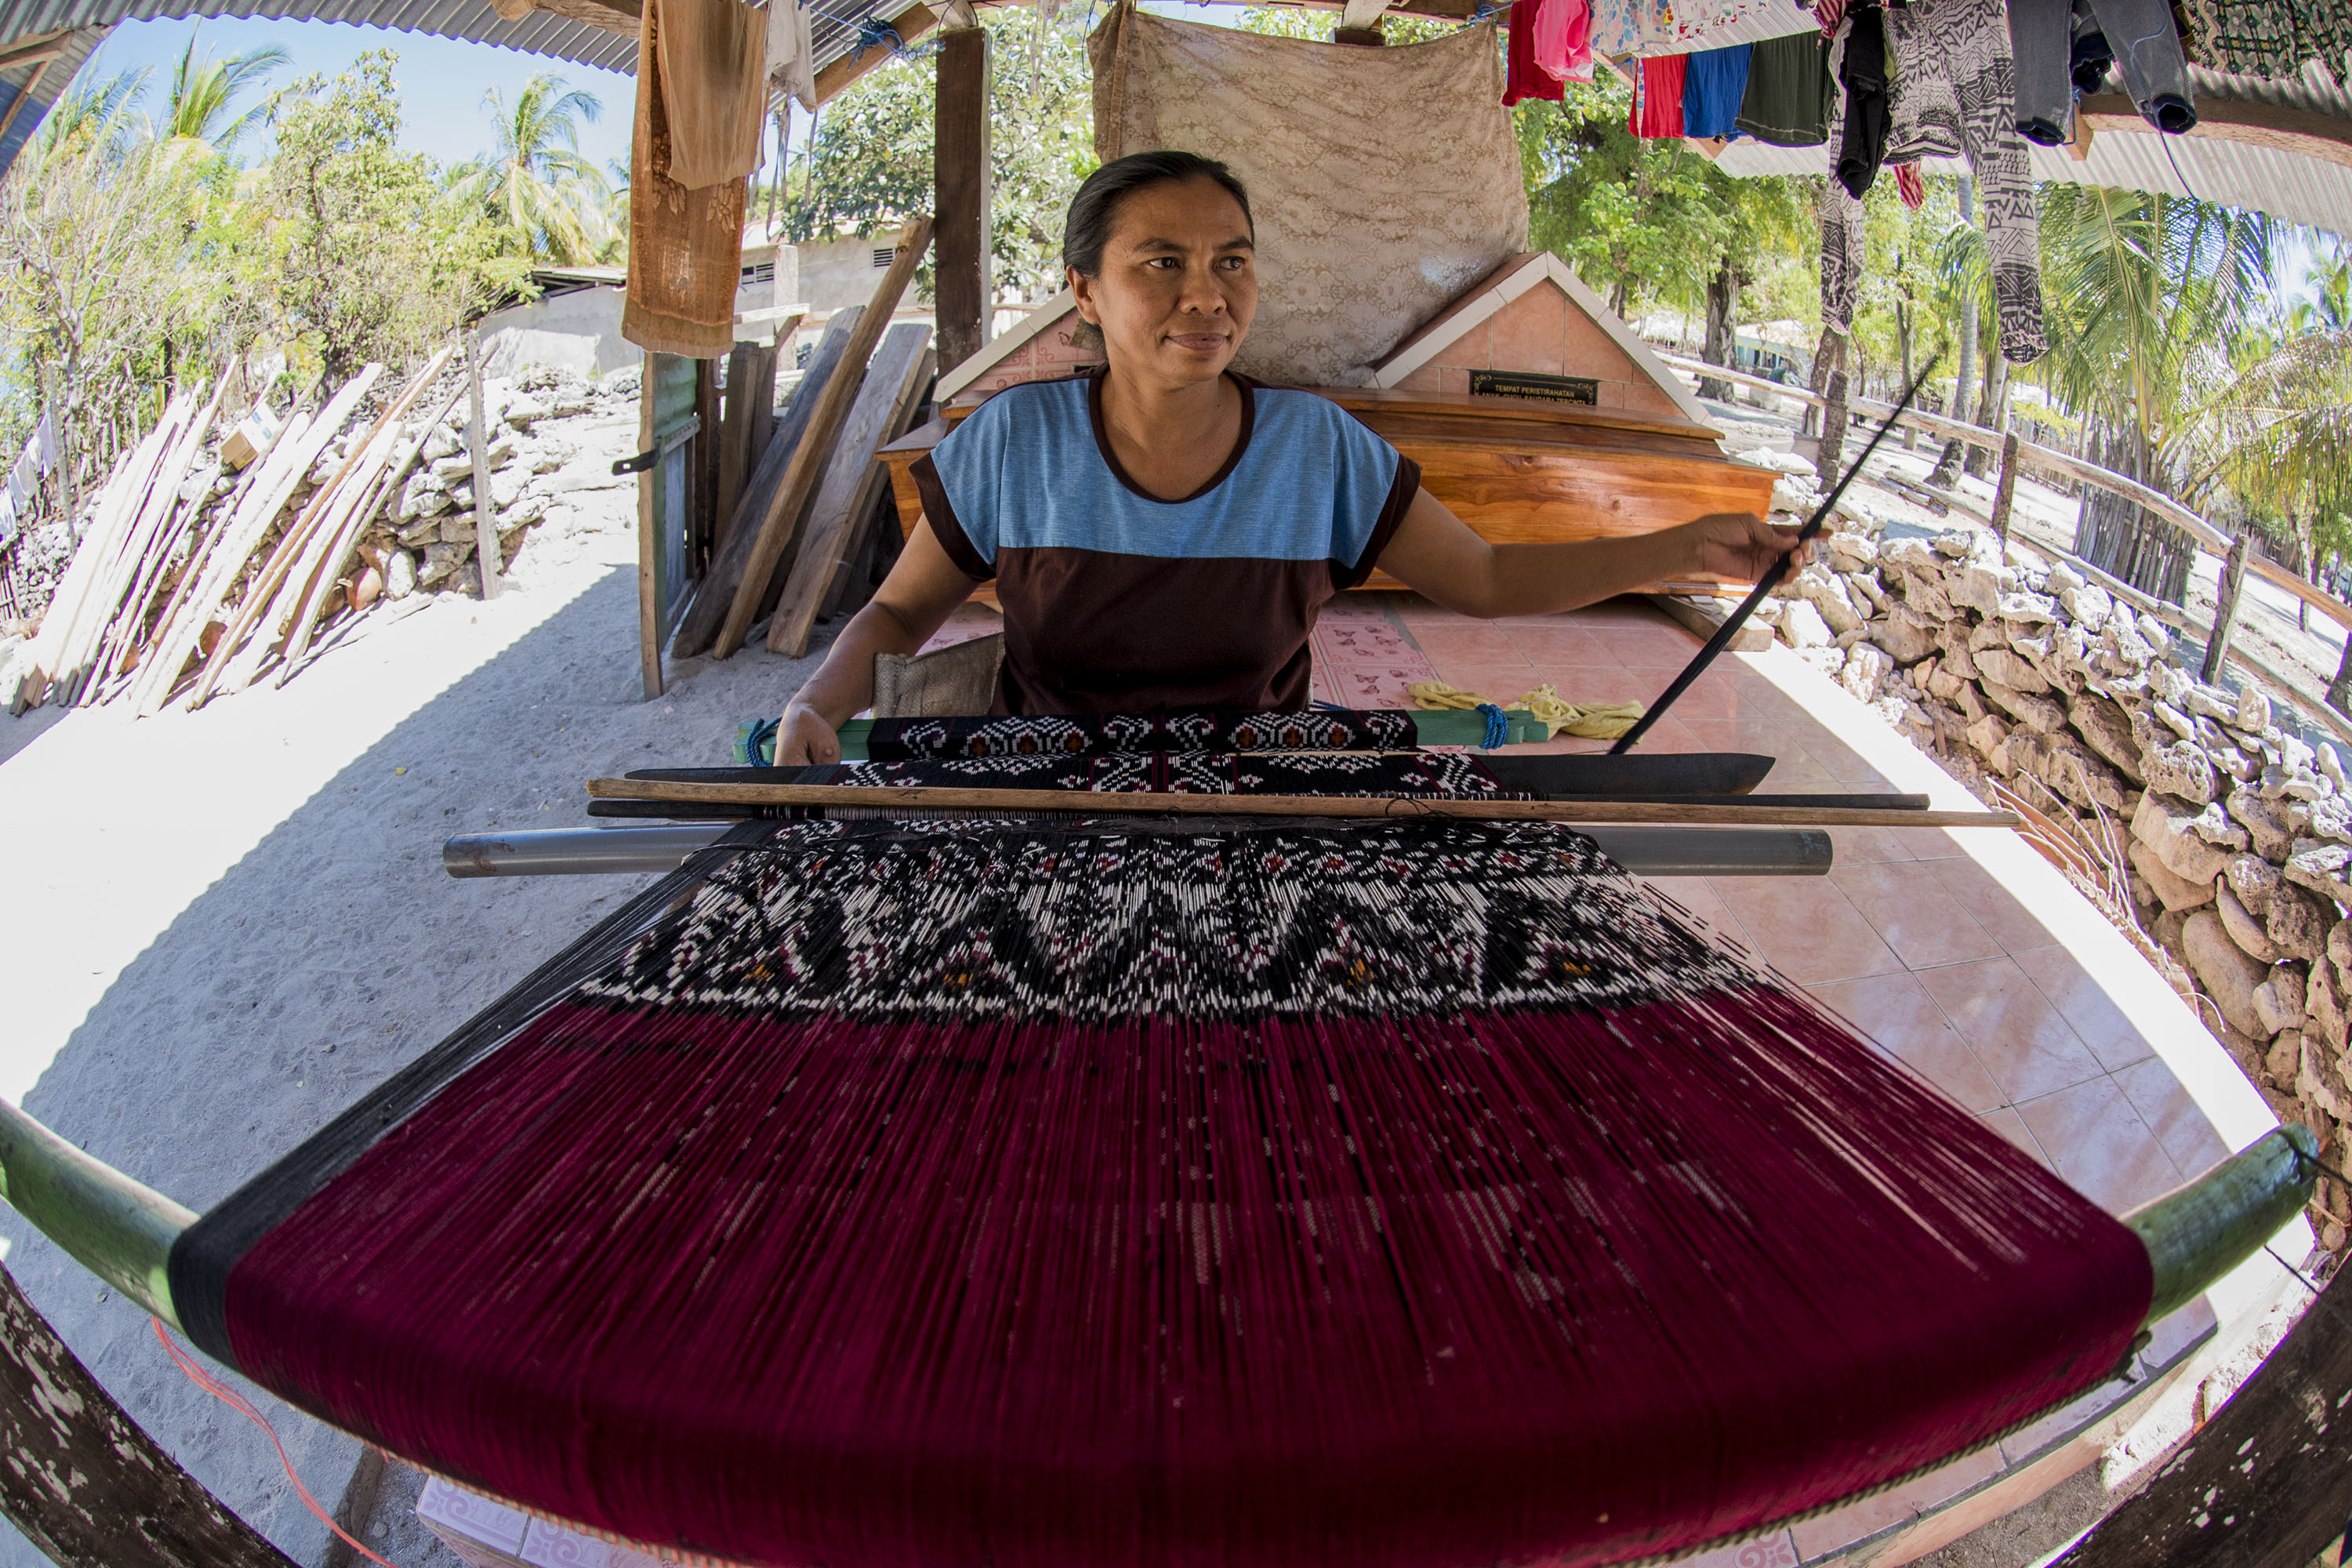 Warga membuat kain tenun ikat di atas makam keluarga, pulau Ndao, Rote, Nusa Tenggara Timur, Kamis (13/8). Pulau tersebut menjadi salah satu tempat pembuat kain tenun ikat khas Rote yang di jual Rp200-600 ribu per kain. ANTARA FOTO/M Agung Rajasa.